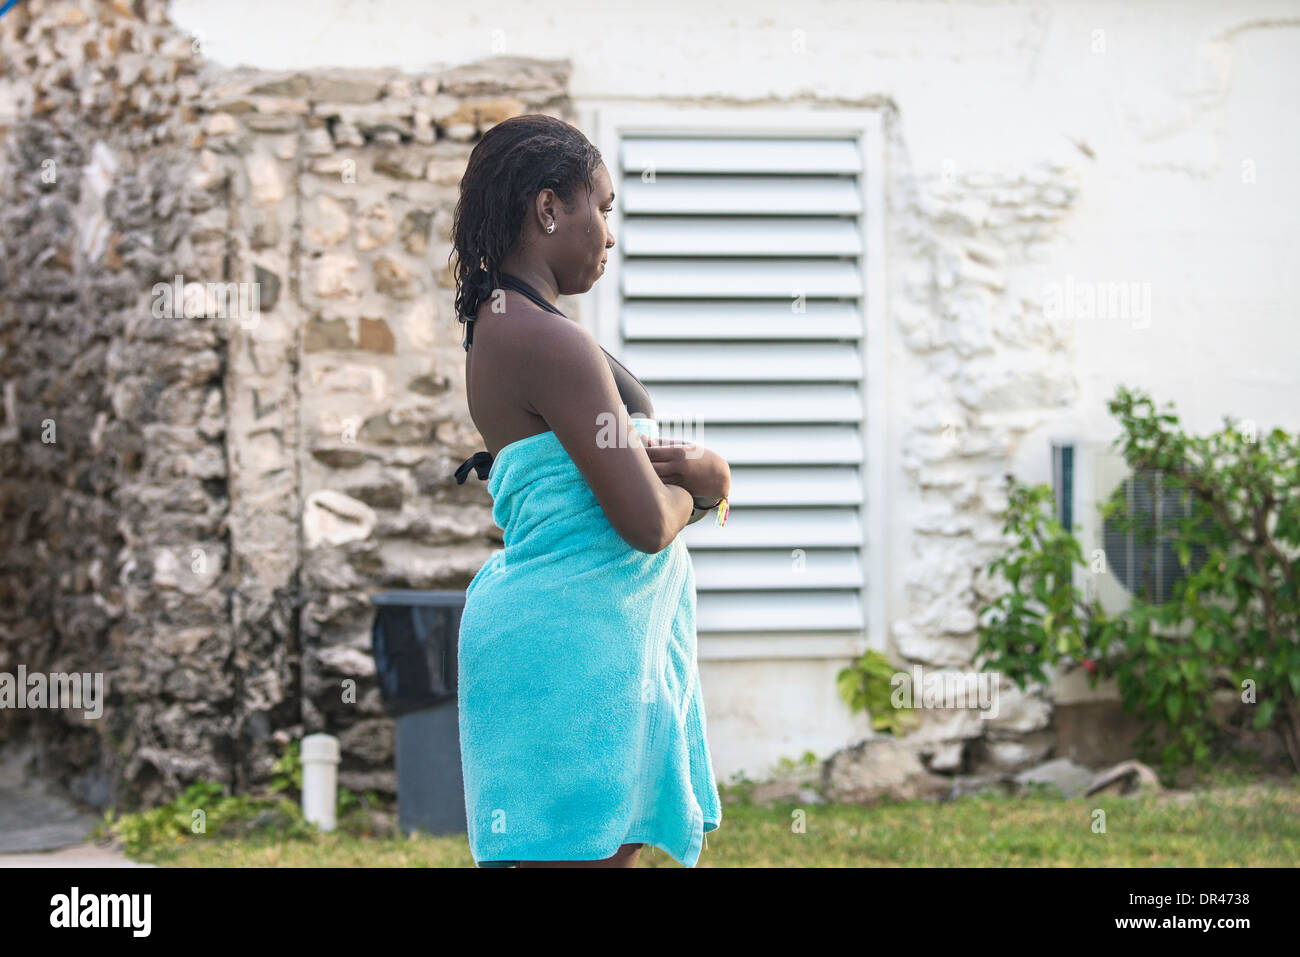 Un giovane americano africano donna in costume da bagno sta avvolto in un asciugamano dopo il nuoto nei Caraibi. Foto Stock